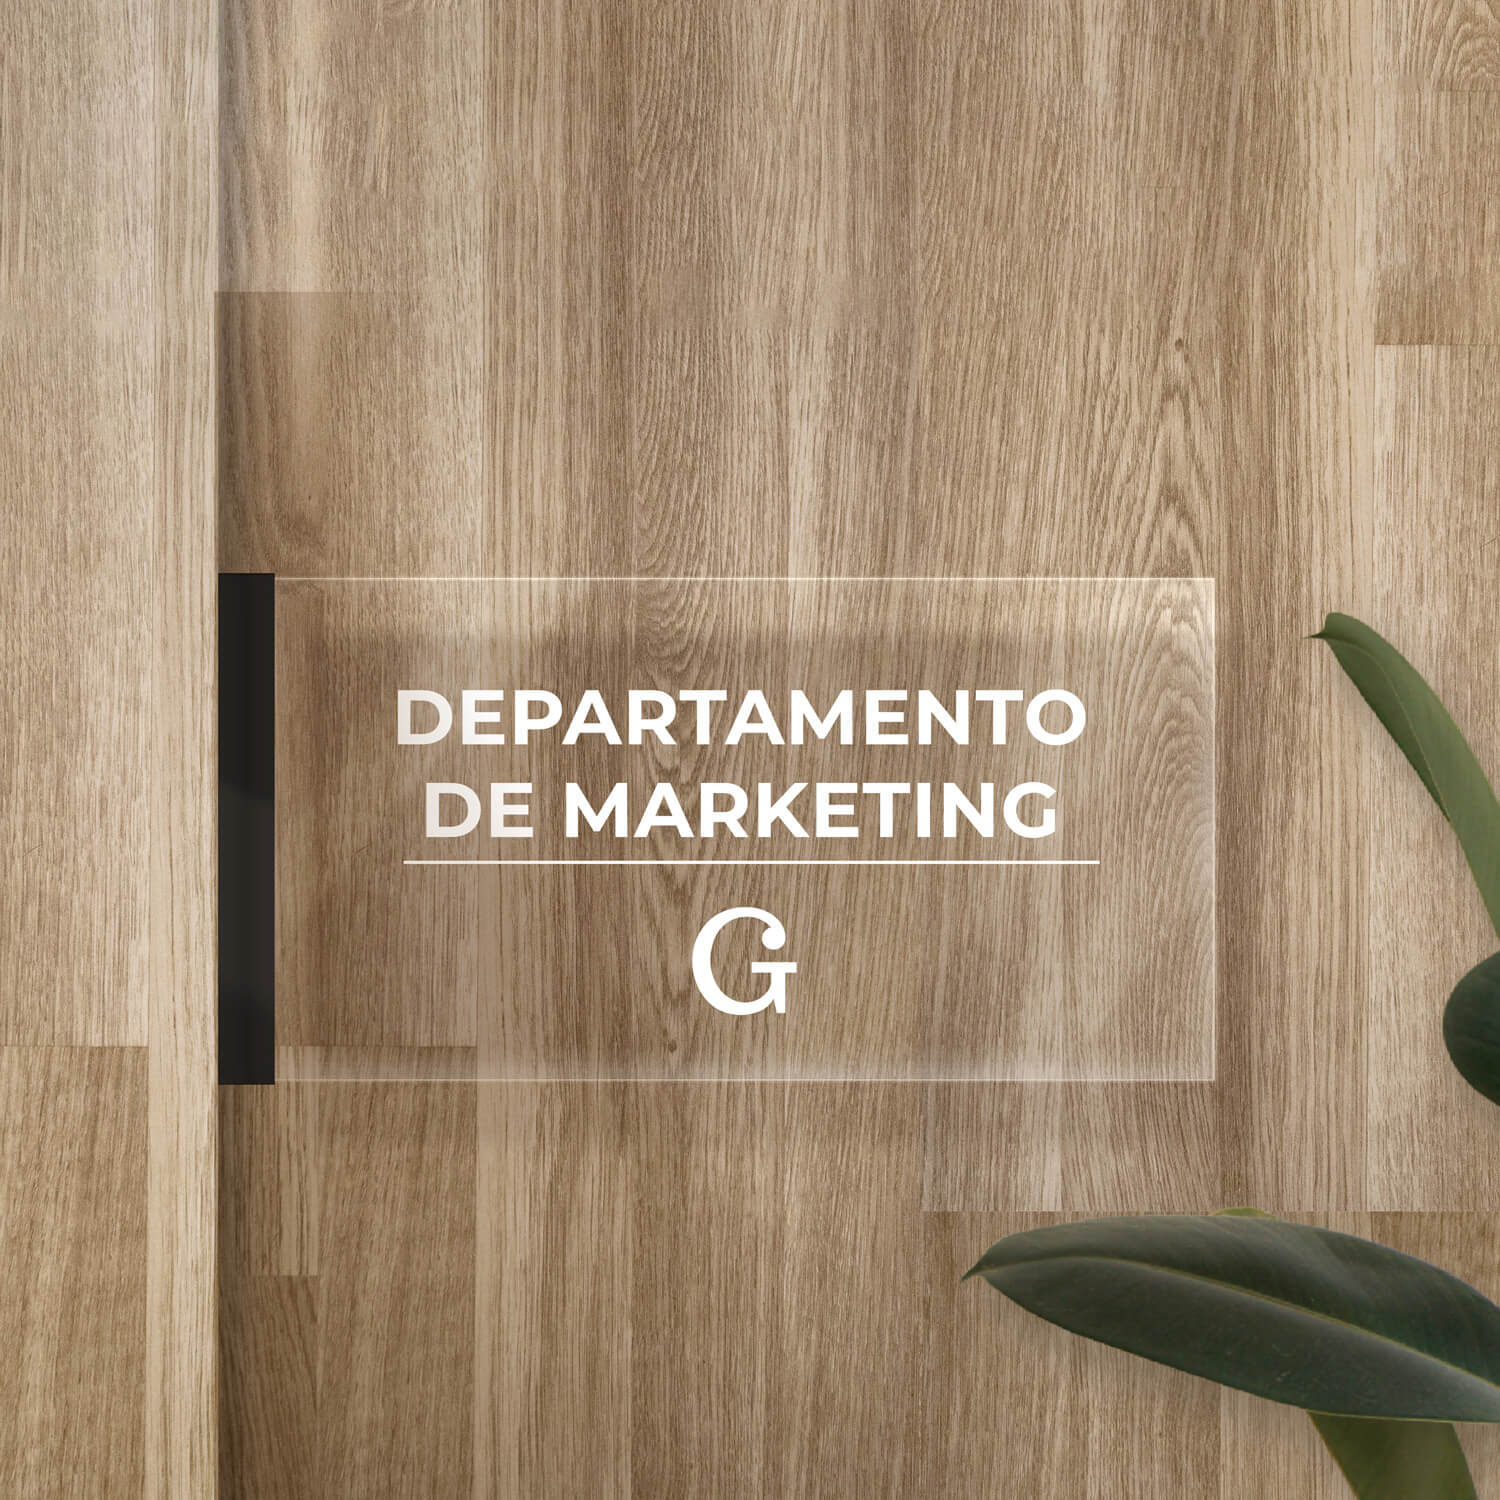 Imagen de una placa de metacrilato rectangular, colocada en la oficina, donde aparece la información de que ahí se encuentra el departamento de marketing de la empresa Arturo Gómez